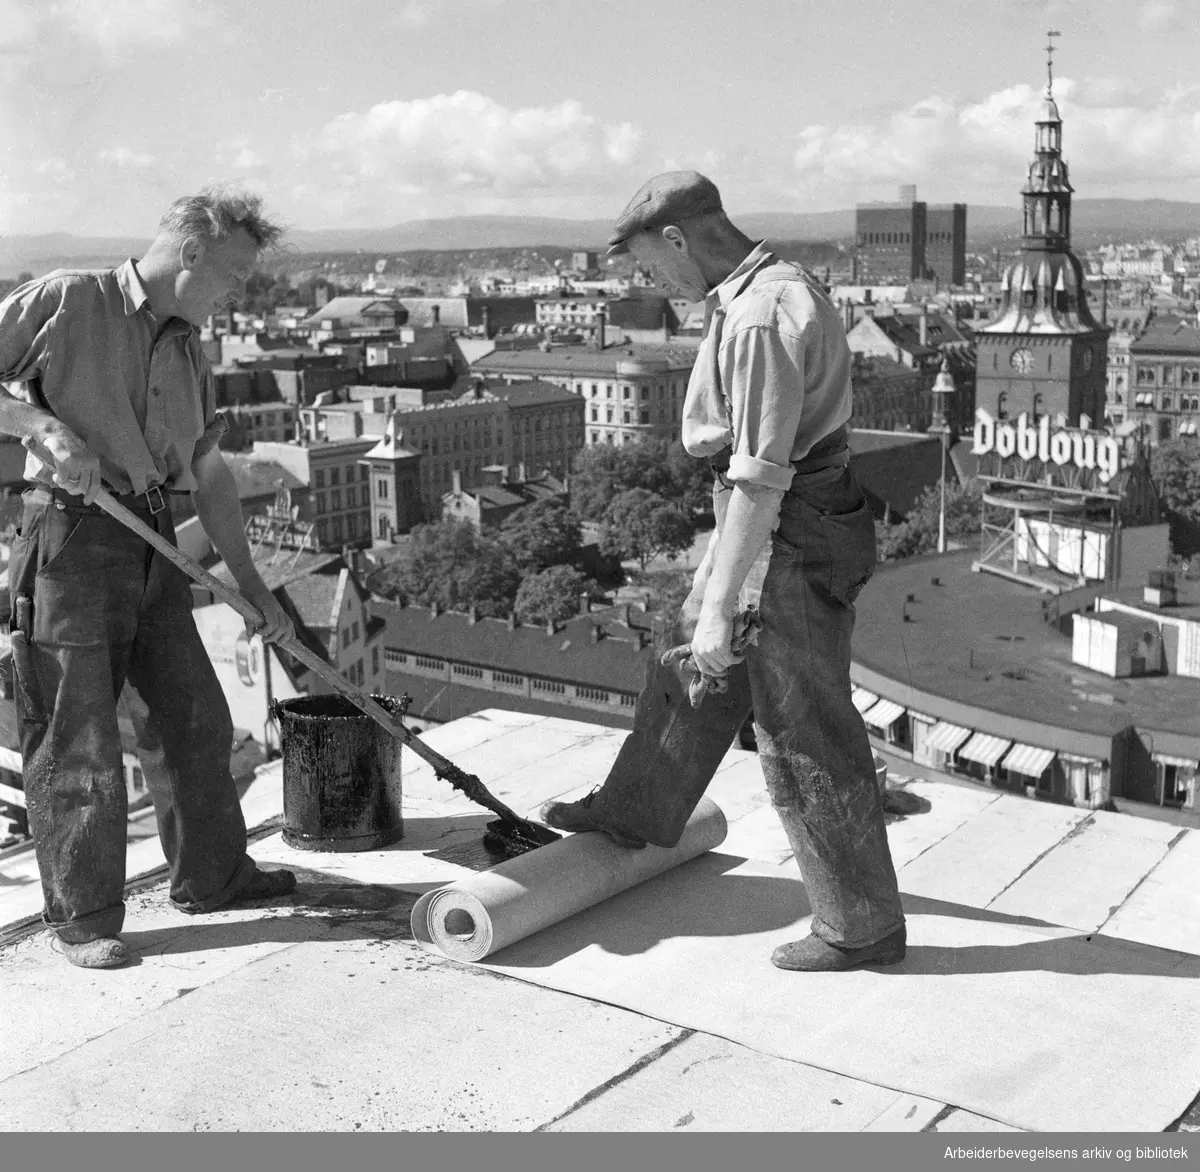 Taktekkere i arbeid på det kommende Hotel Viking. Her omtalt som Folkehotellet. I dag Clarion Hotel, The Hub. Oslo Rådhus, Oslo Domkirke og Doblouggården i bakgrunnen. August 1950.